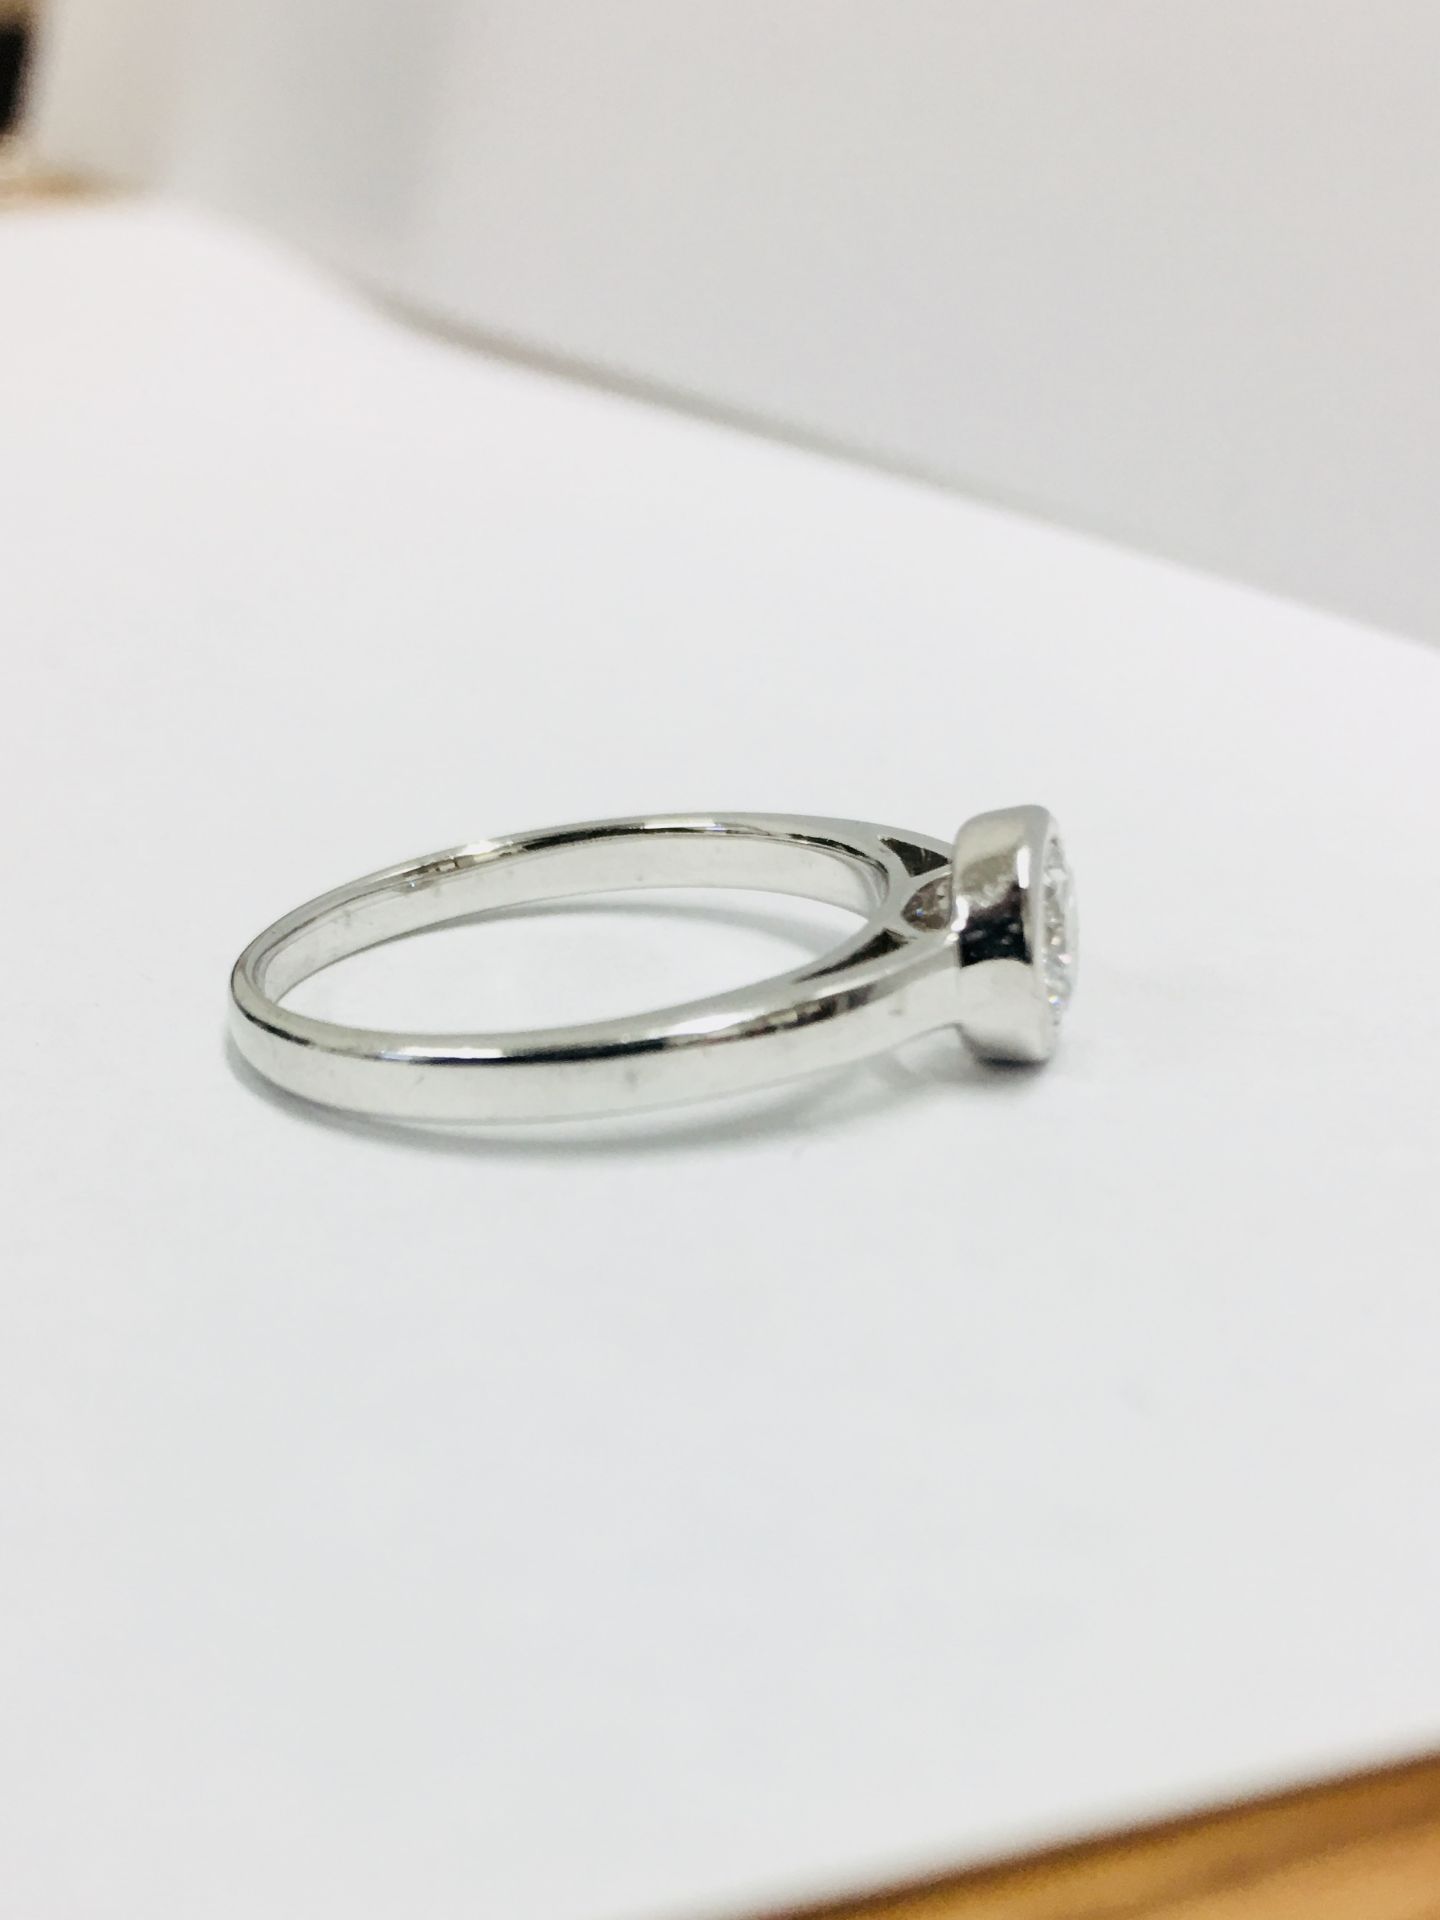 Platinum diamond solitaire ring,0.50ct brilliant cut diamond D colour vs clarity,Platinum rubover - Image 4 of 5